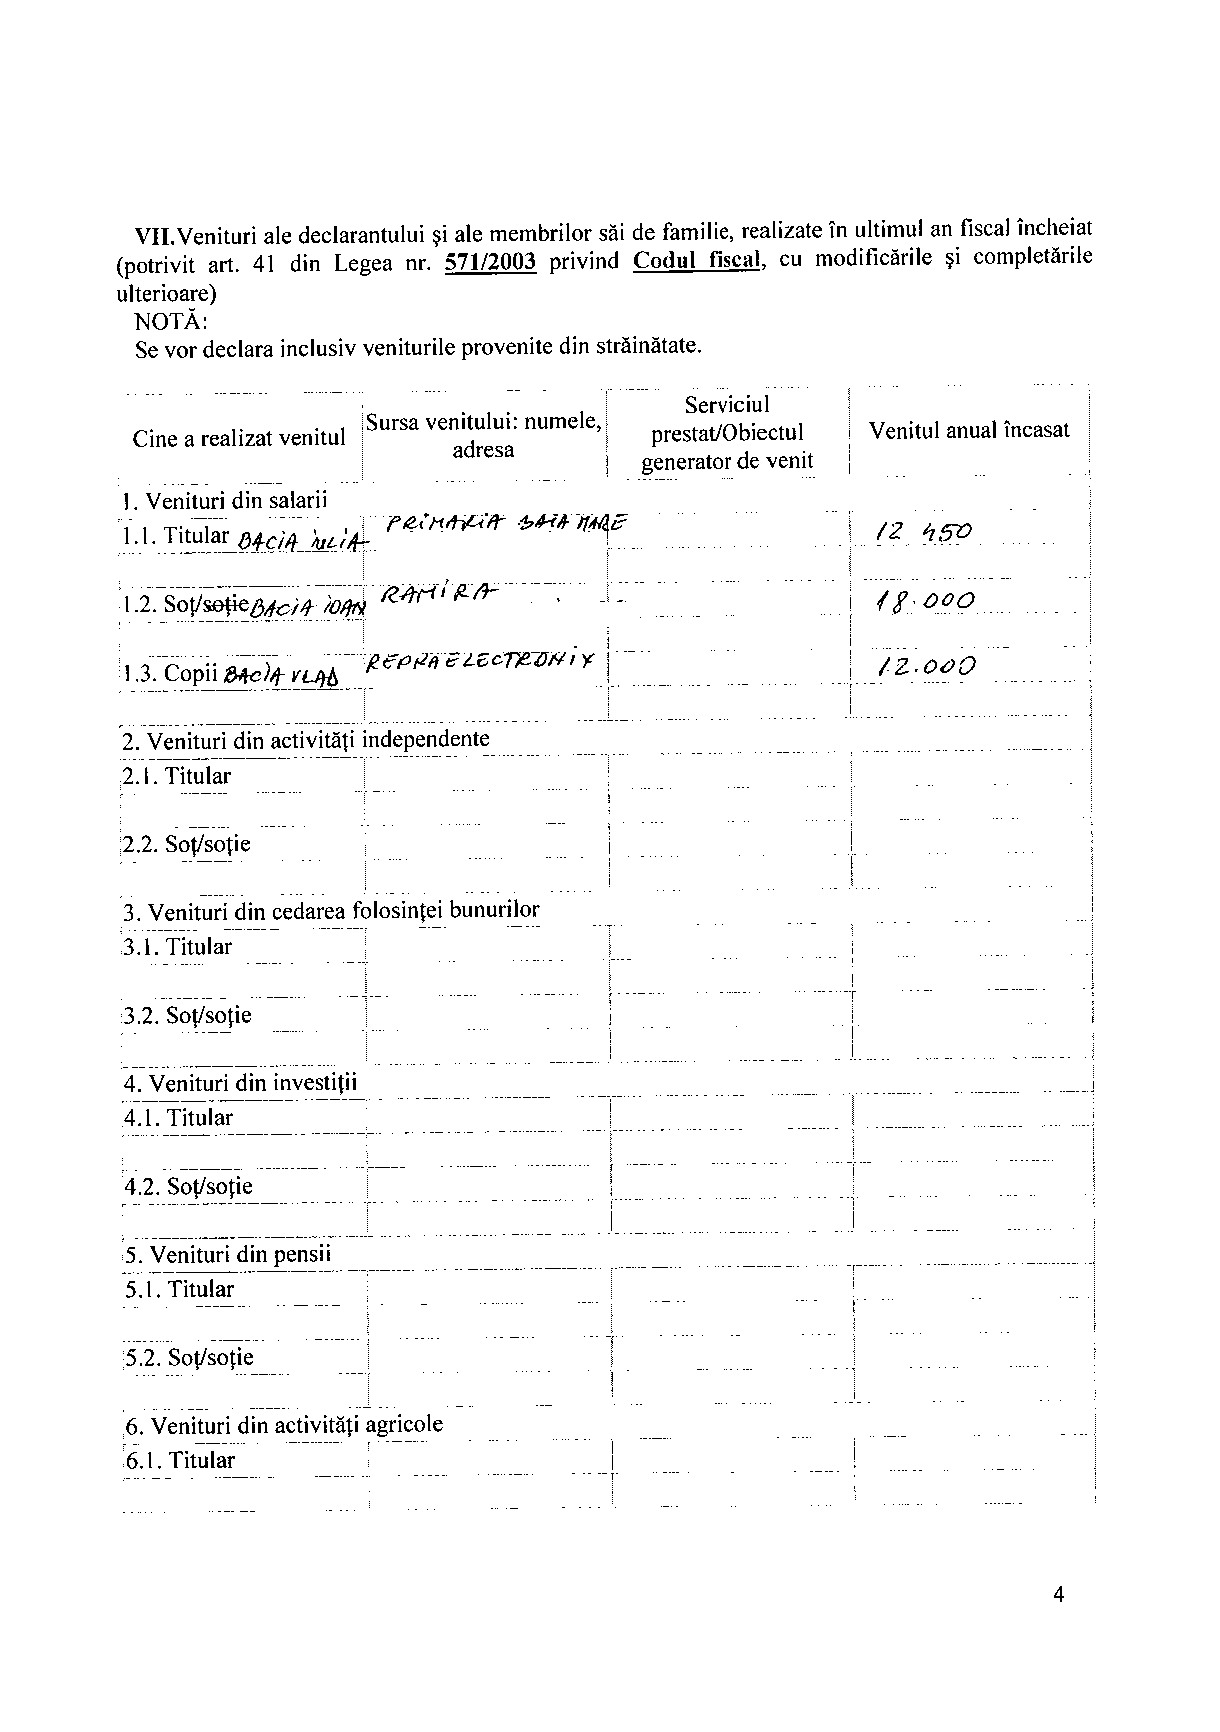 Declaratia de avere si de interese din data 25.06.2012 - pagina 4 din 6